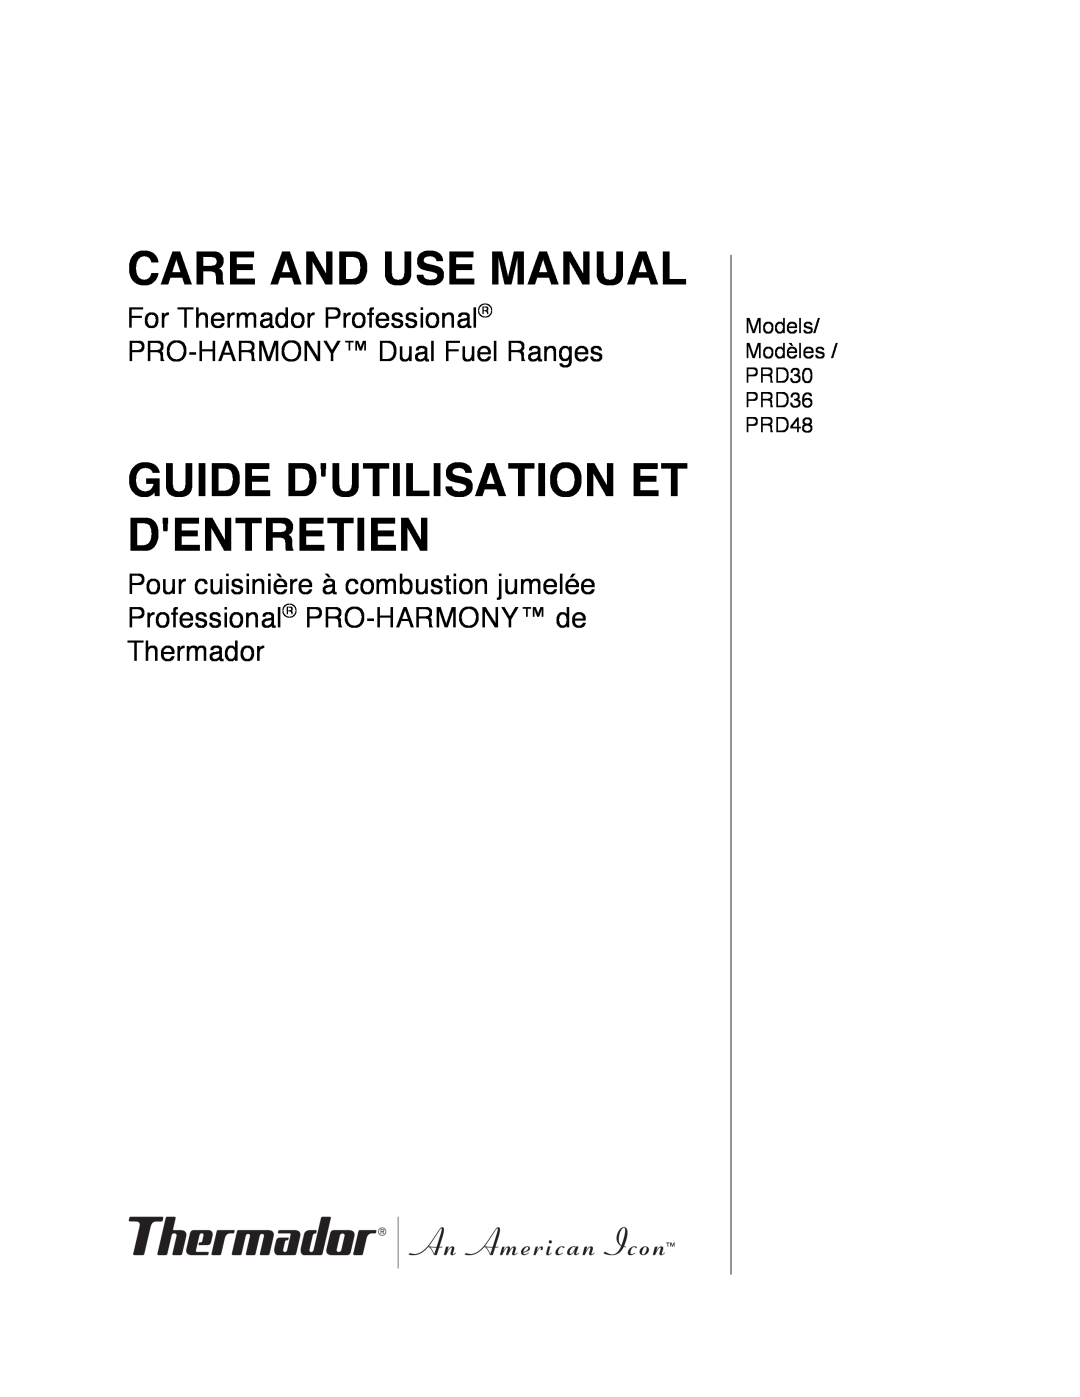 Thermador PRD36, PRD48, PRD30 manuel dutilisation Care And Use Manual, Manuel D’Utilisation Et D’Entretien 